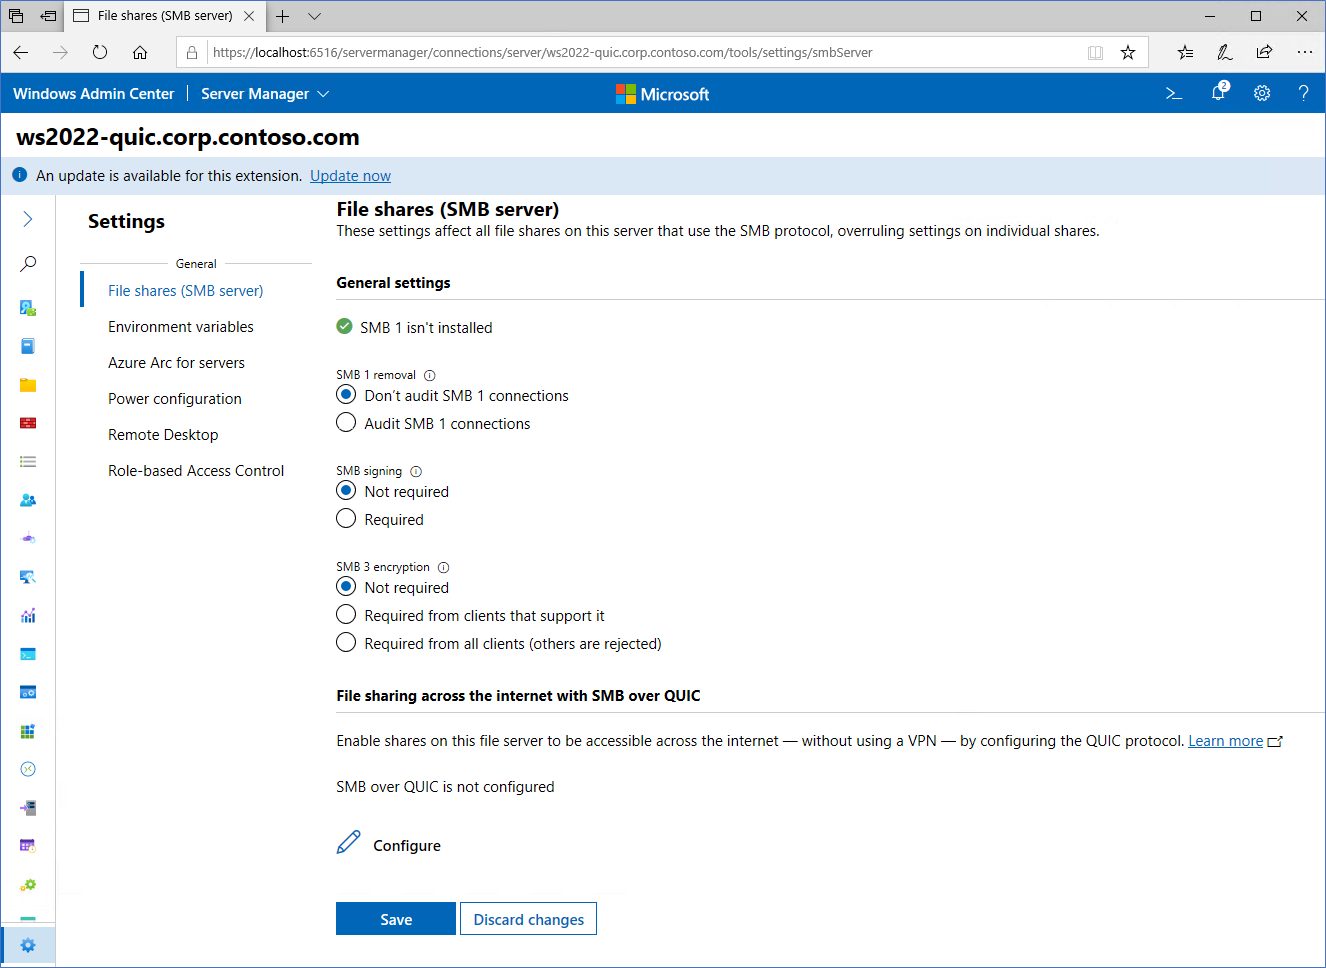 Image montrant l’écran de configuration de SMB sur QUIC dans Windows Admin Center